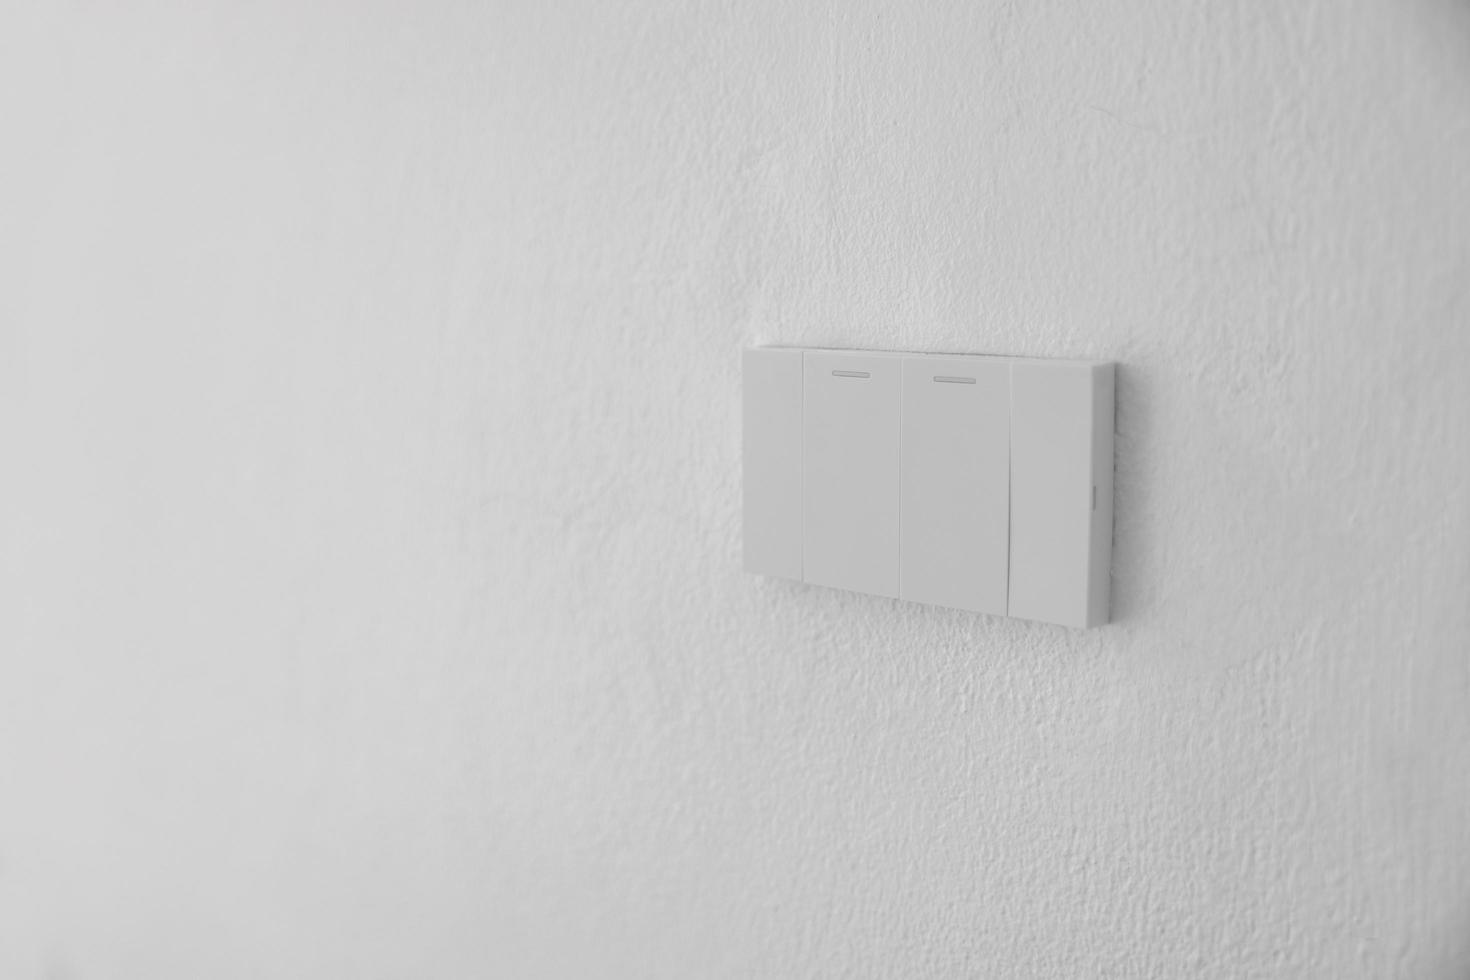 ljus växla, närbild vit plast mekanisk växla monterad på en vit vägg foto